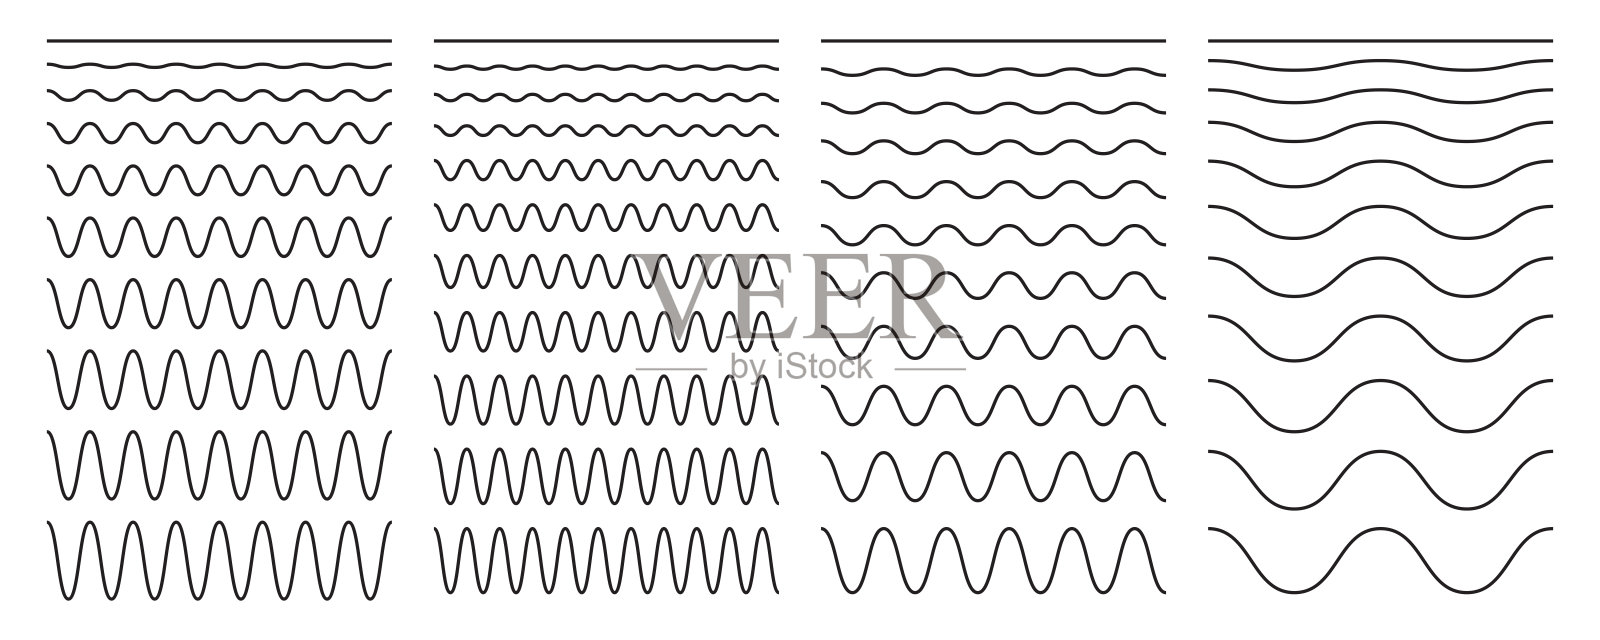 在白色背景上一组波浪状的水平线。矢量设计元素。插画图片素材